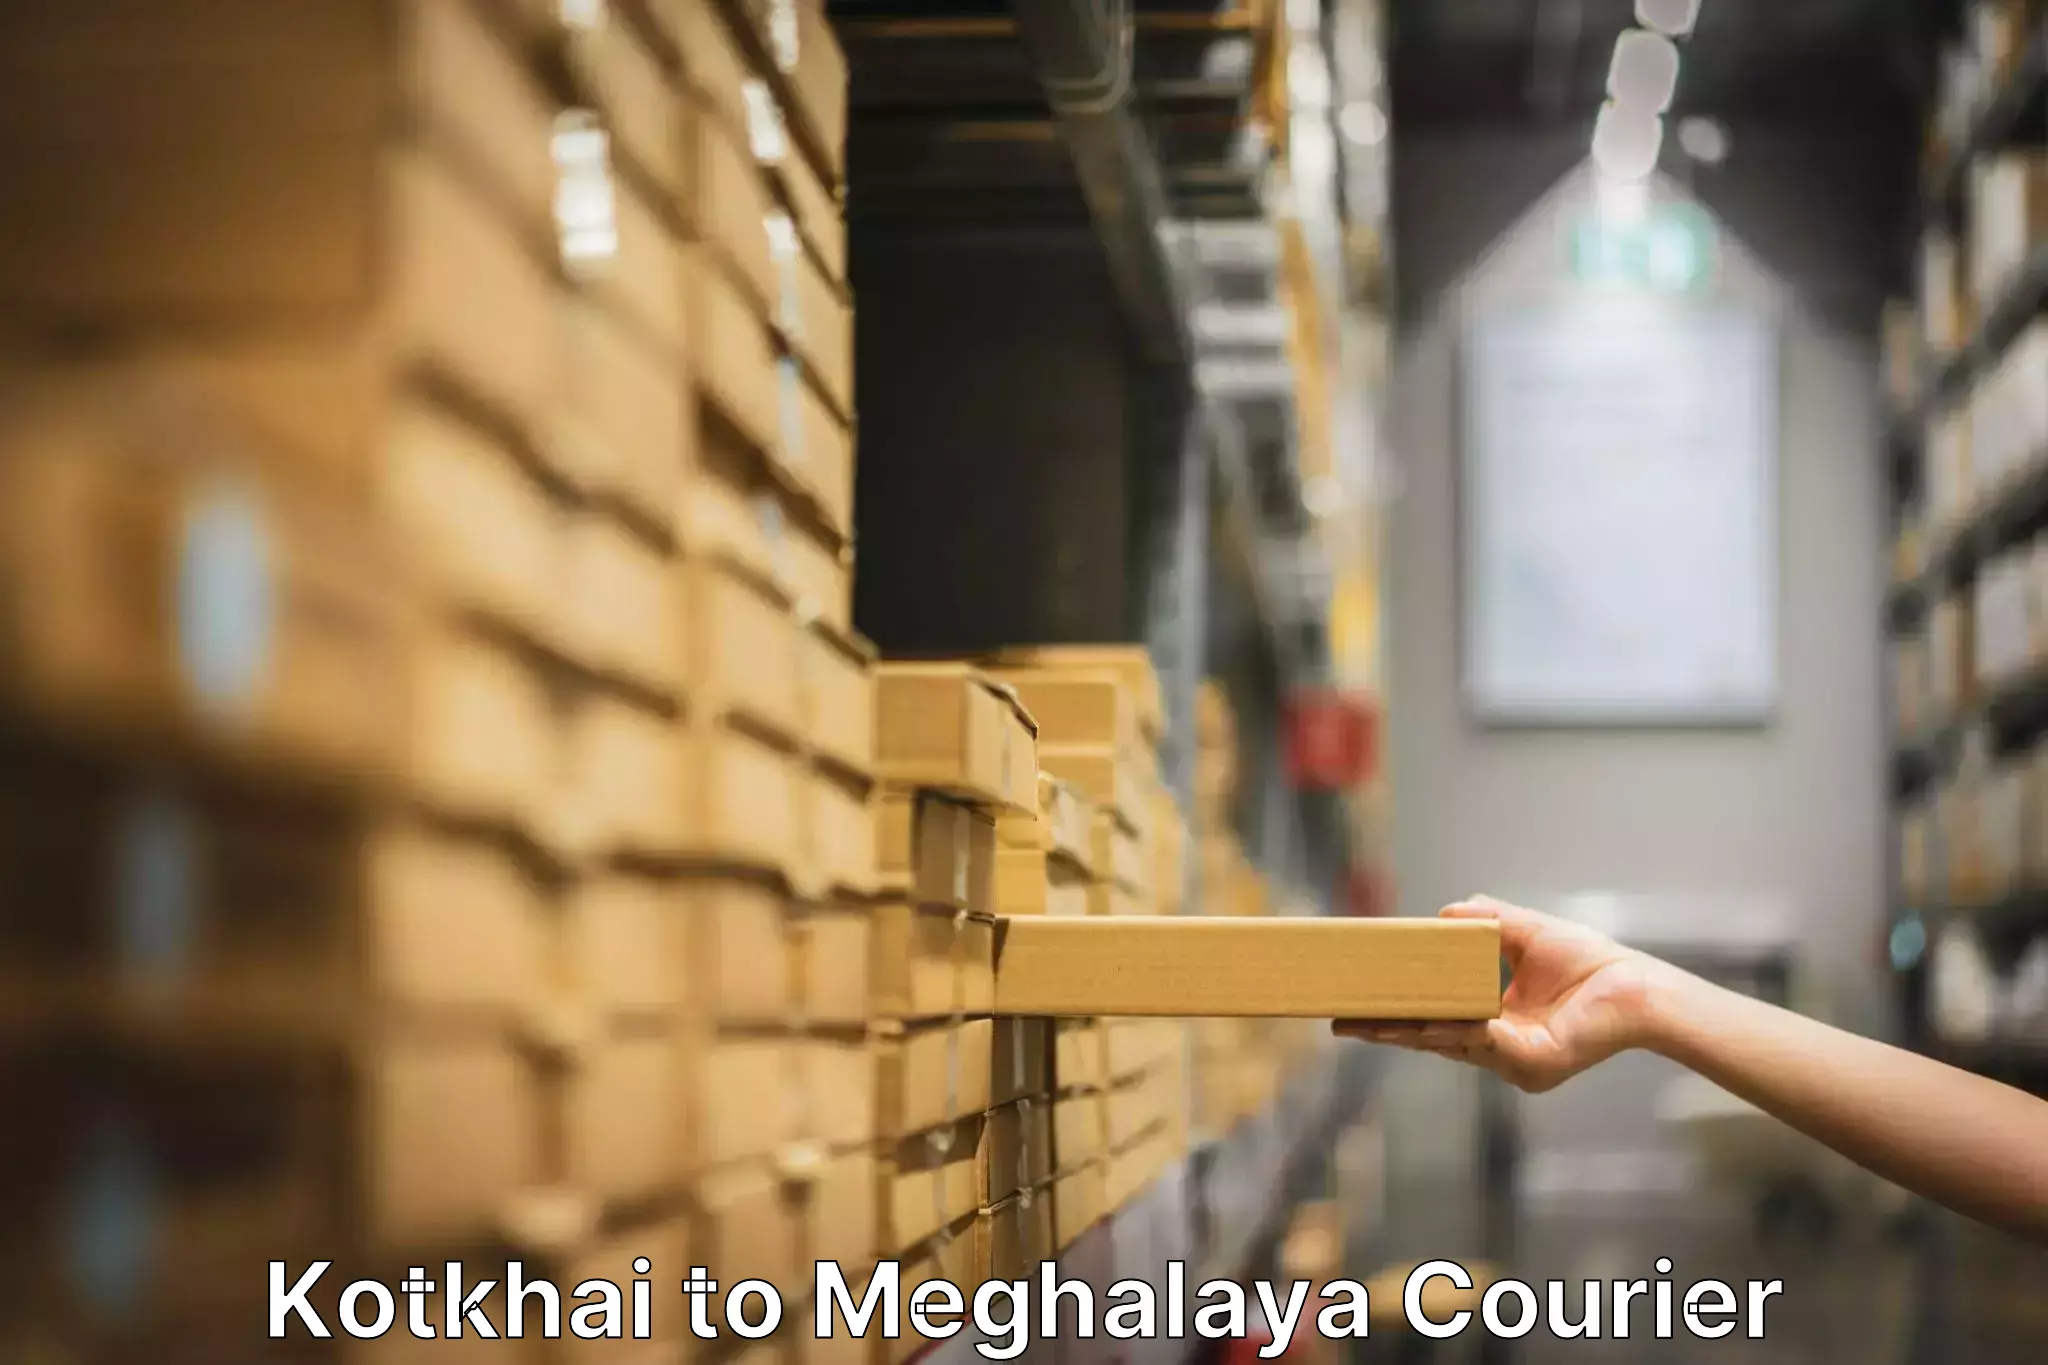 Furniture moving solutions Kotkhai to Meghalaya